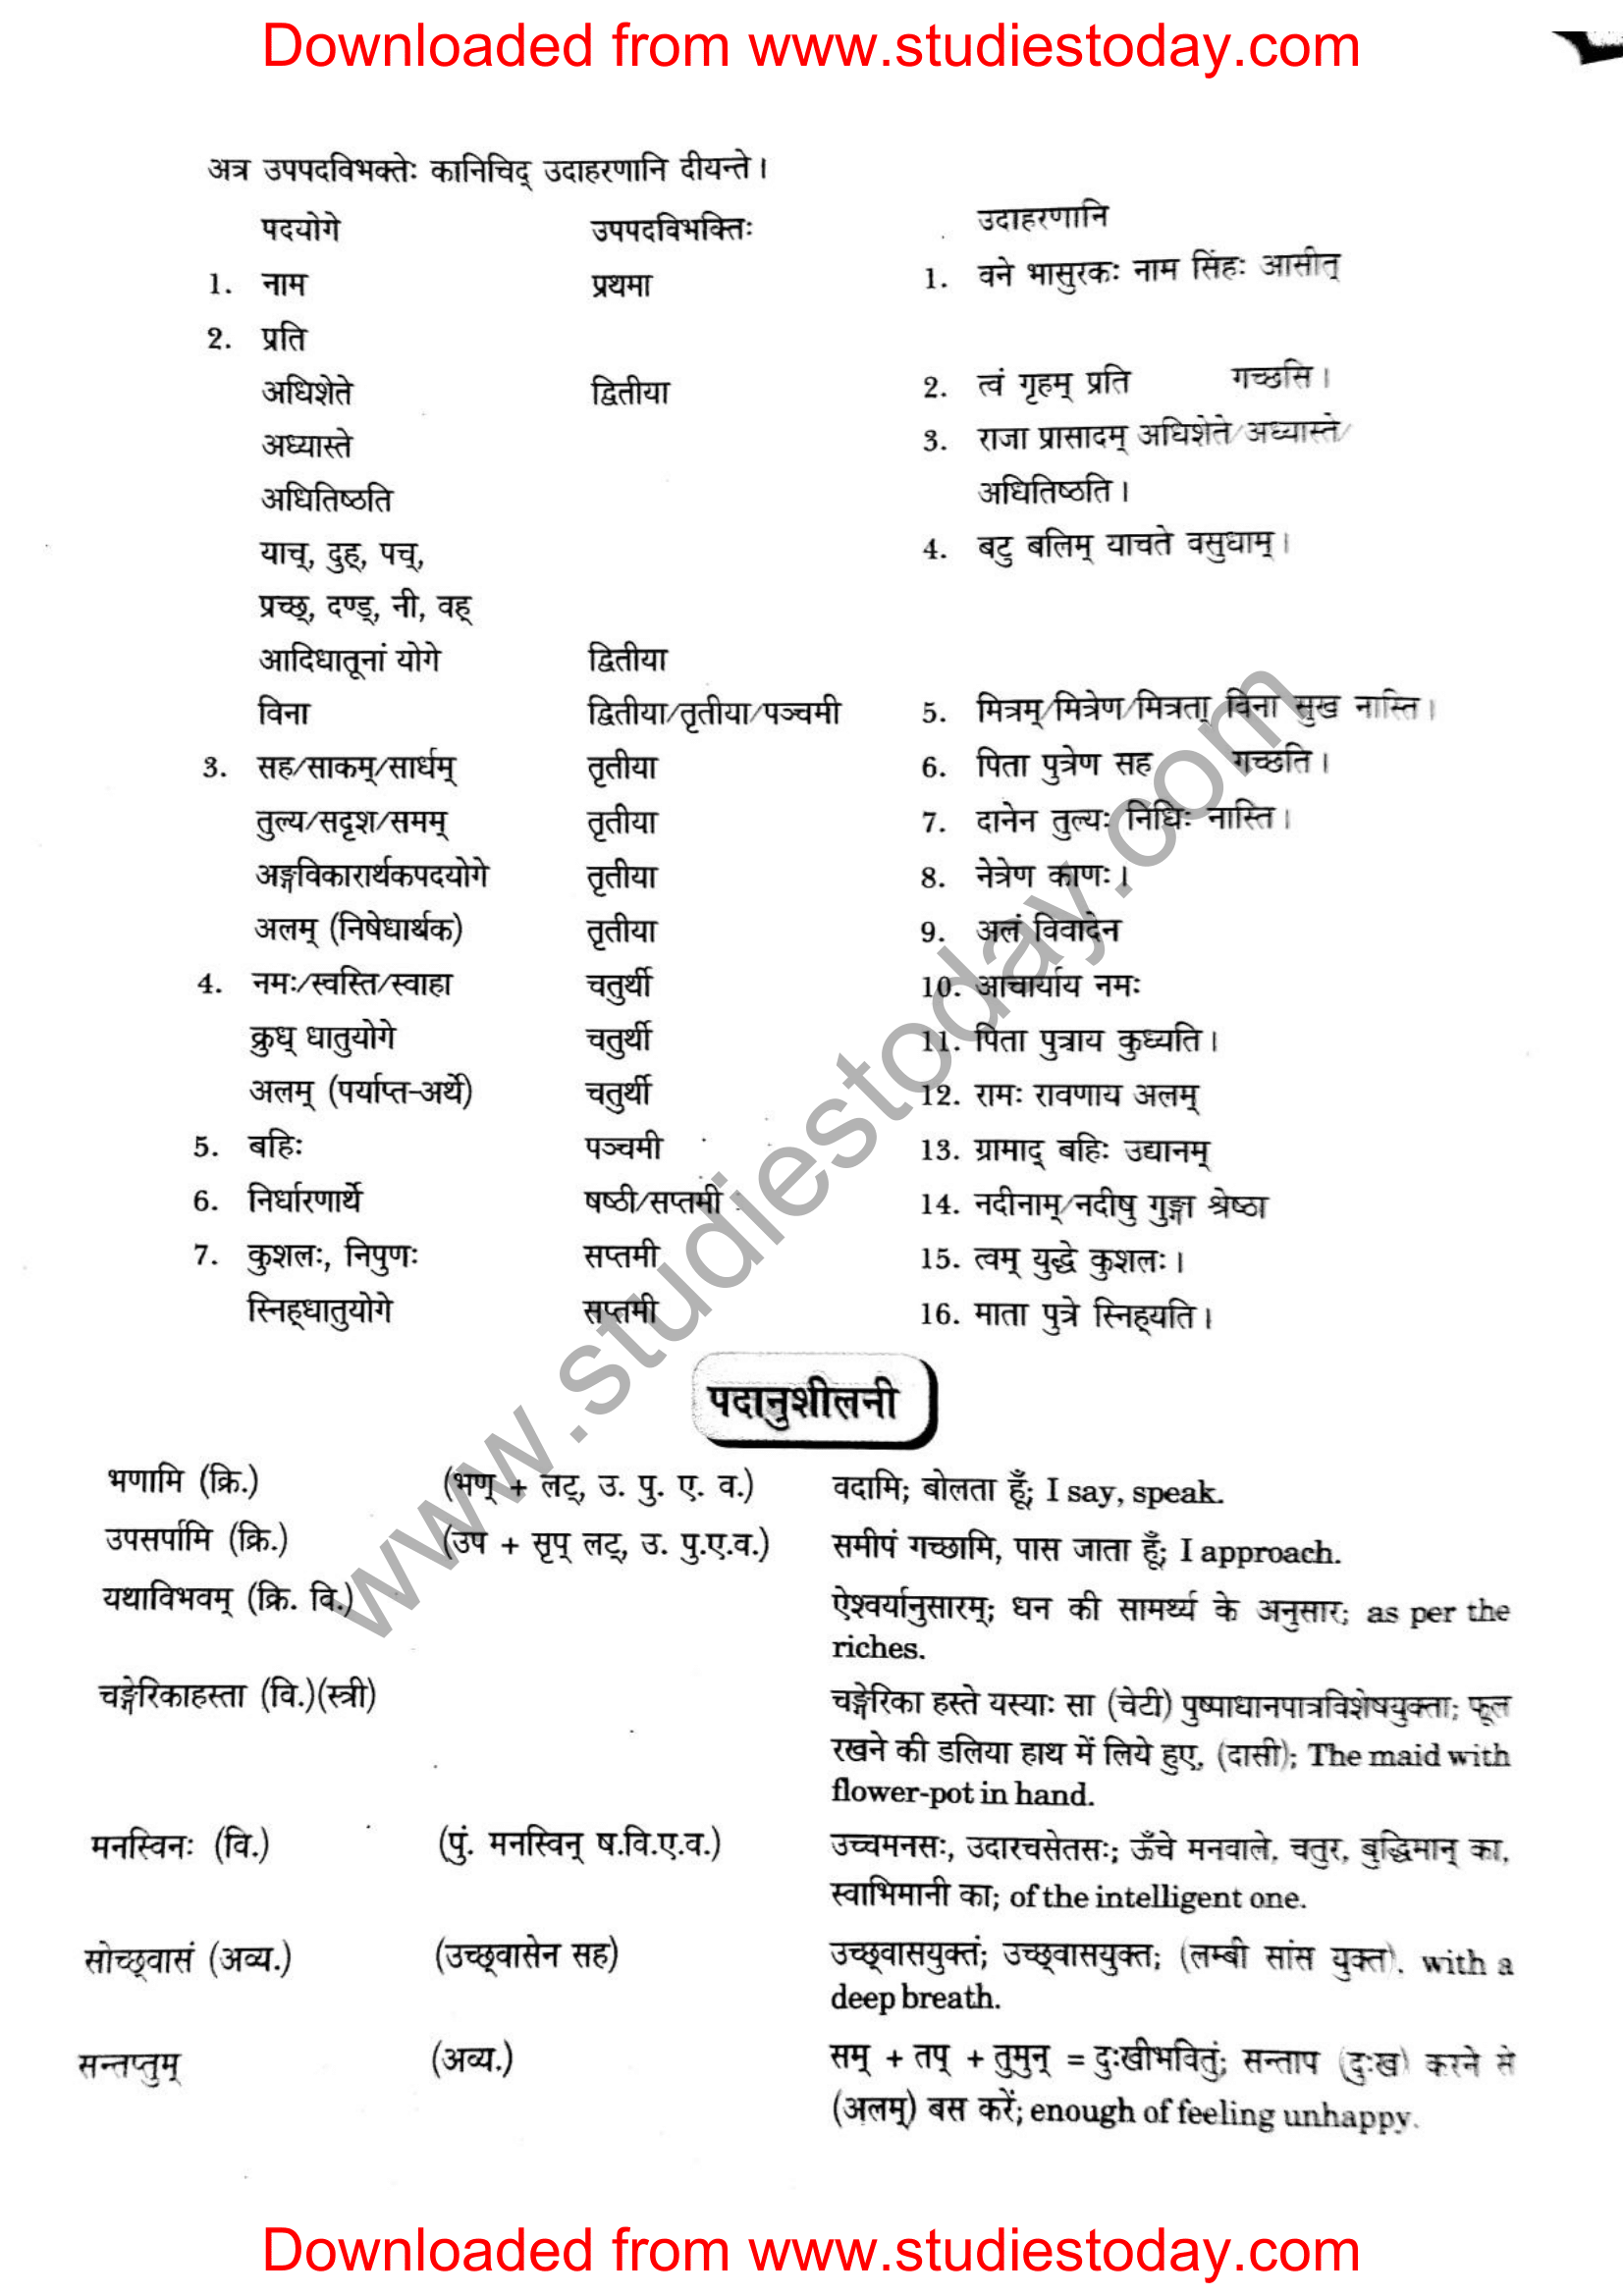 ncert-solutions-class-12-sanskrit-ritikia-chapter-7-14